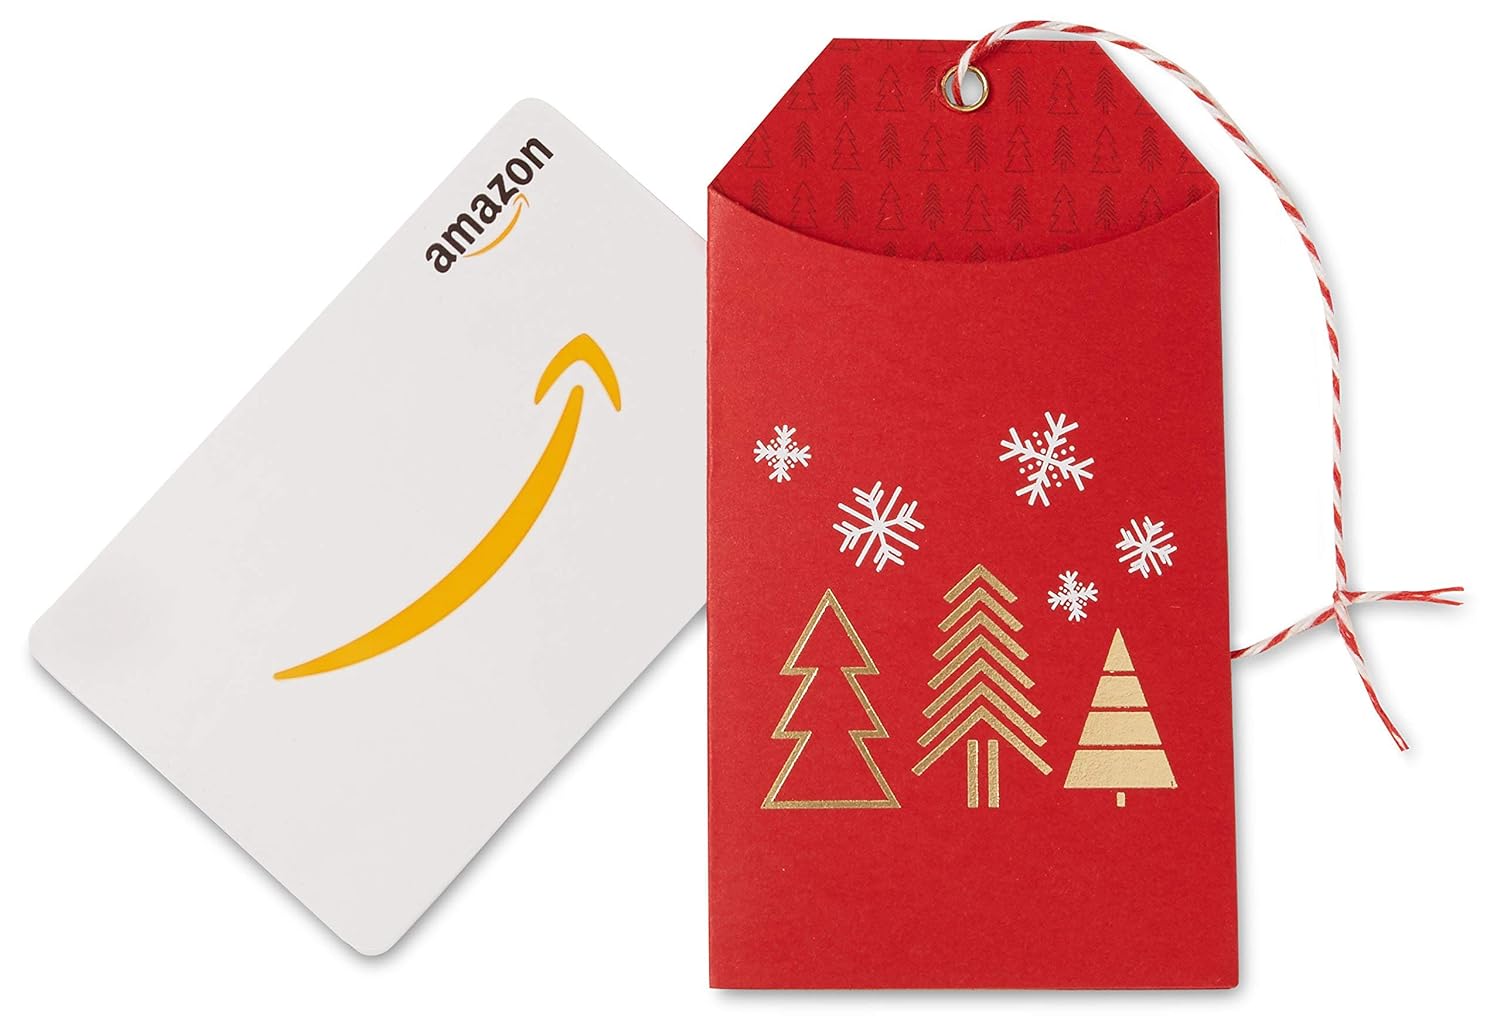 Amazon $25.00 Gift Card